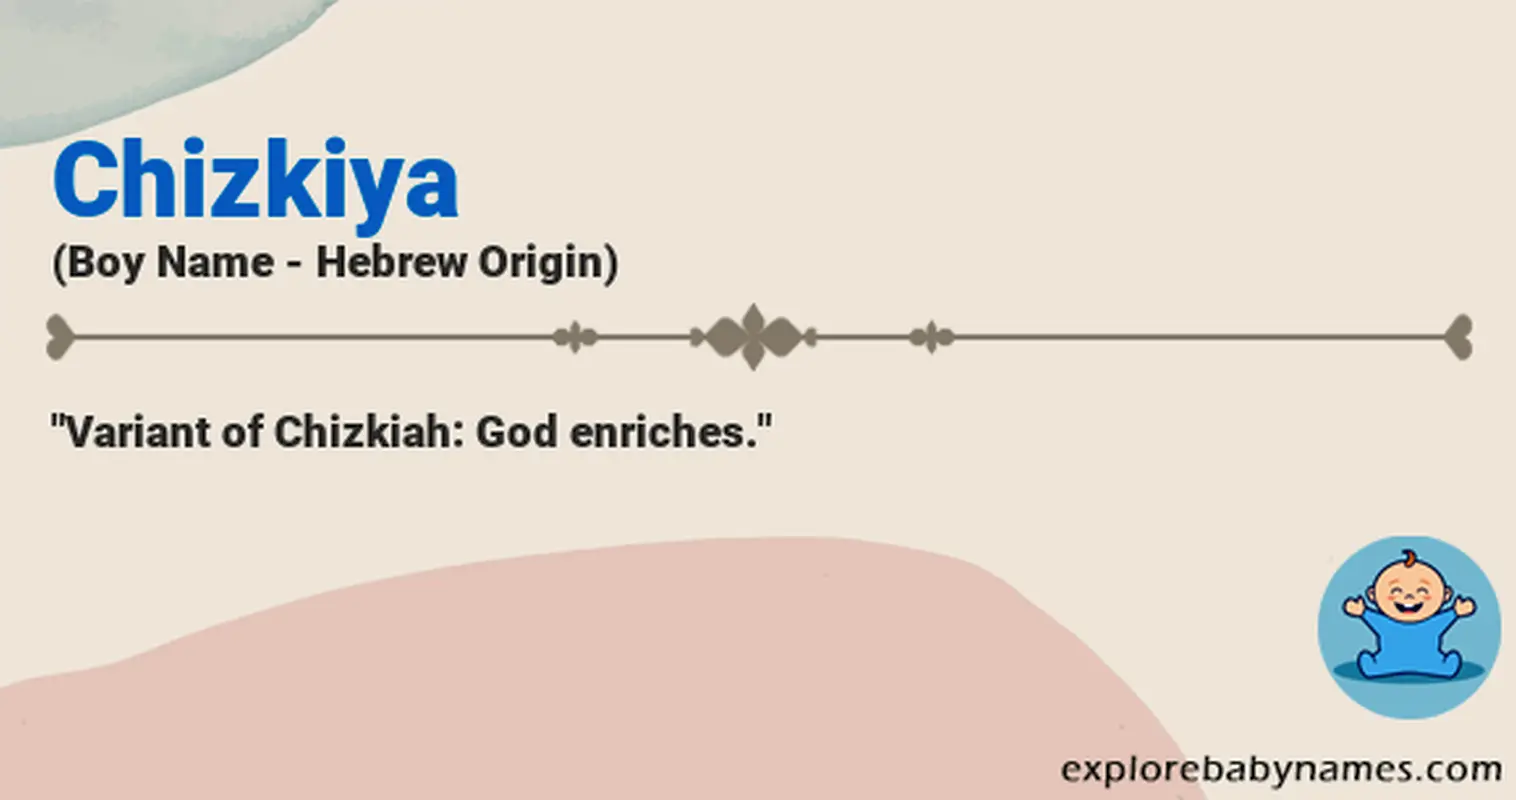 Meaning of Chizkiya